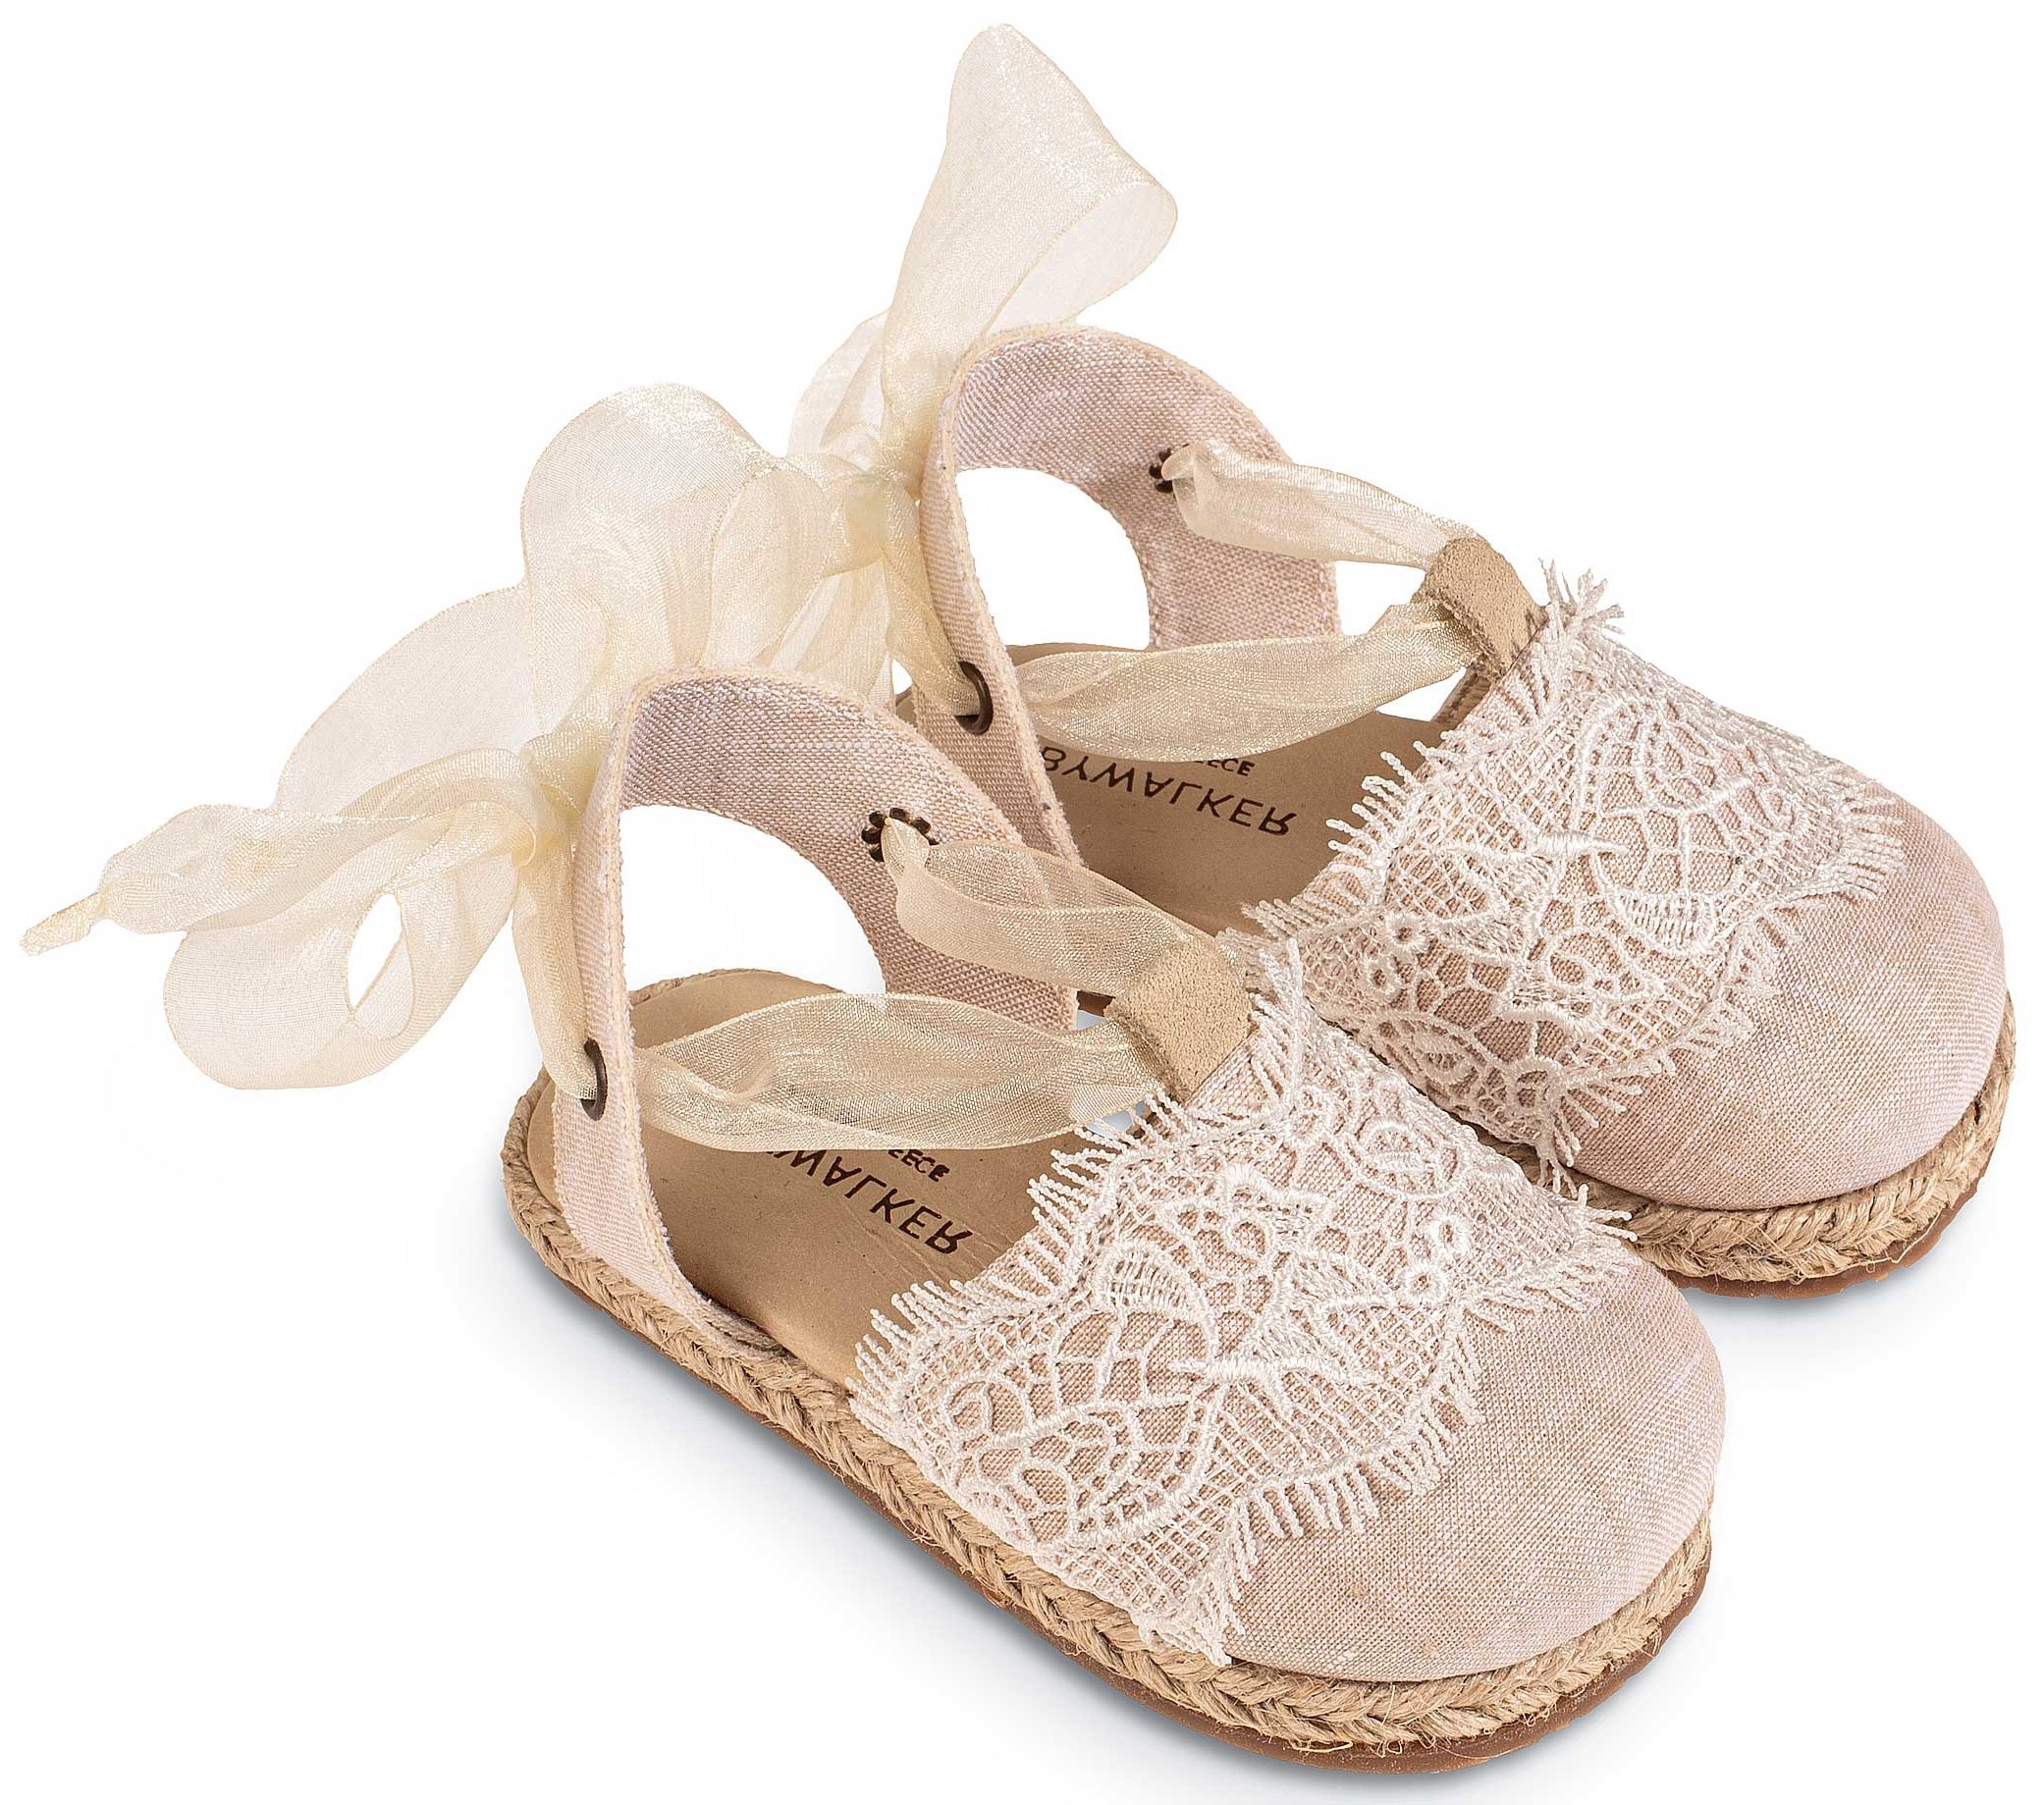 Υφασμάτινη Εσπαντρίγια Περπατήματος - Βαπτιστικά παπούτσια για κορίτσι